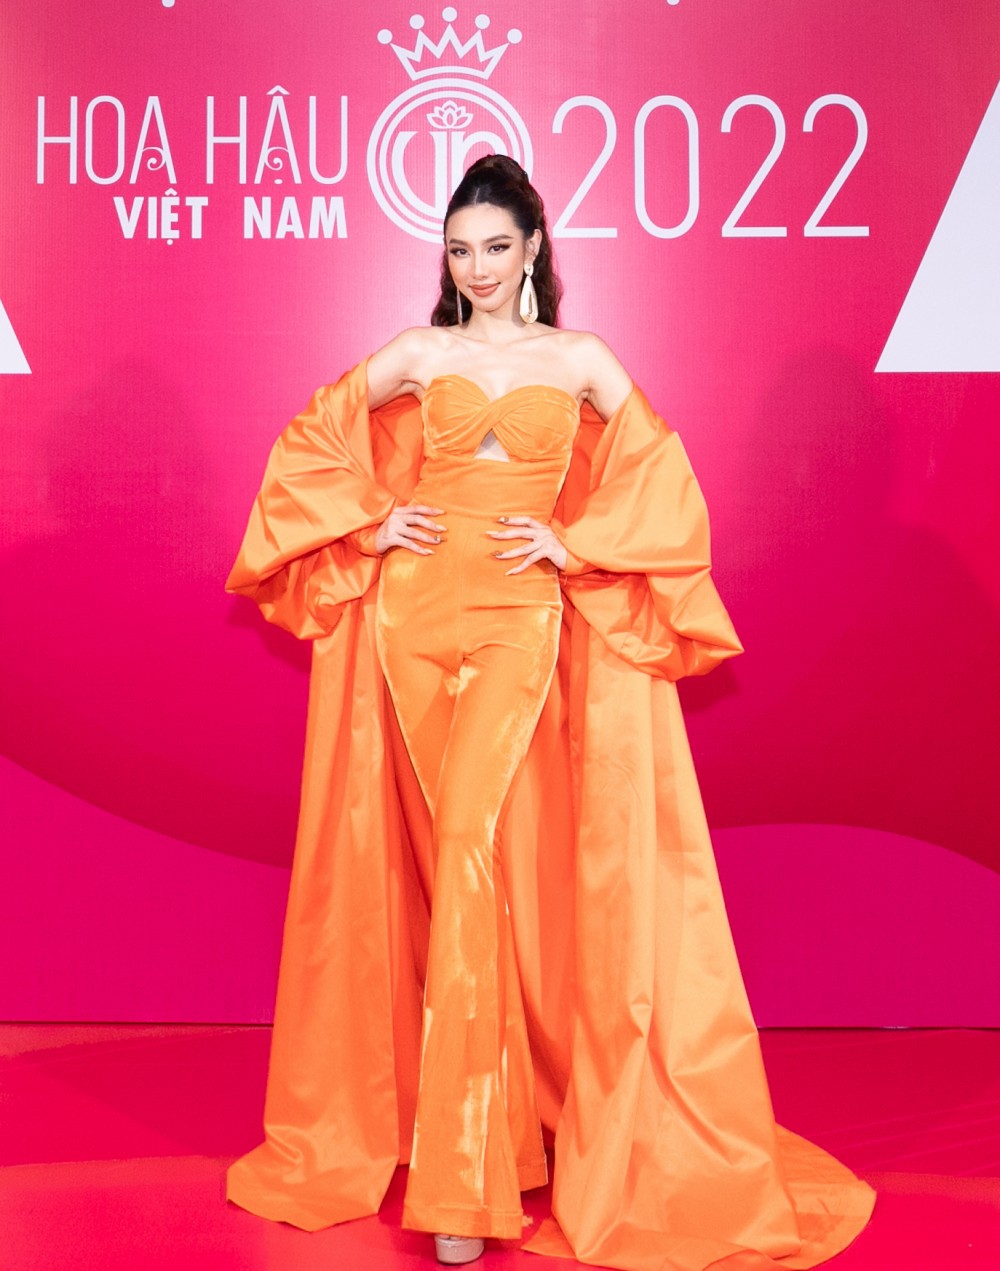 Đỗ Hà khoe đôi chân dài 1,11m tại sự kiện khởi động Hoa hậu Việt Nam 2022 - 3